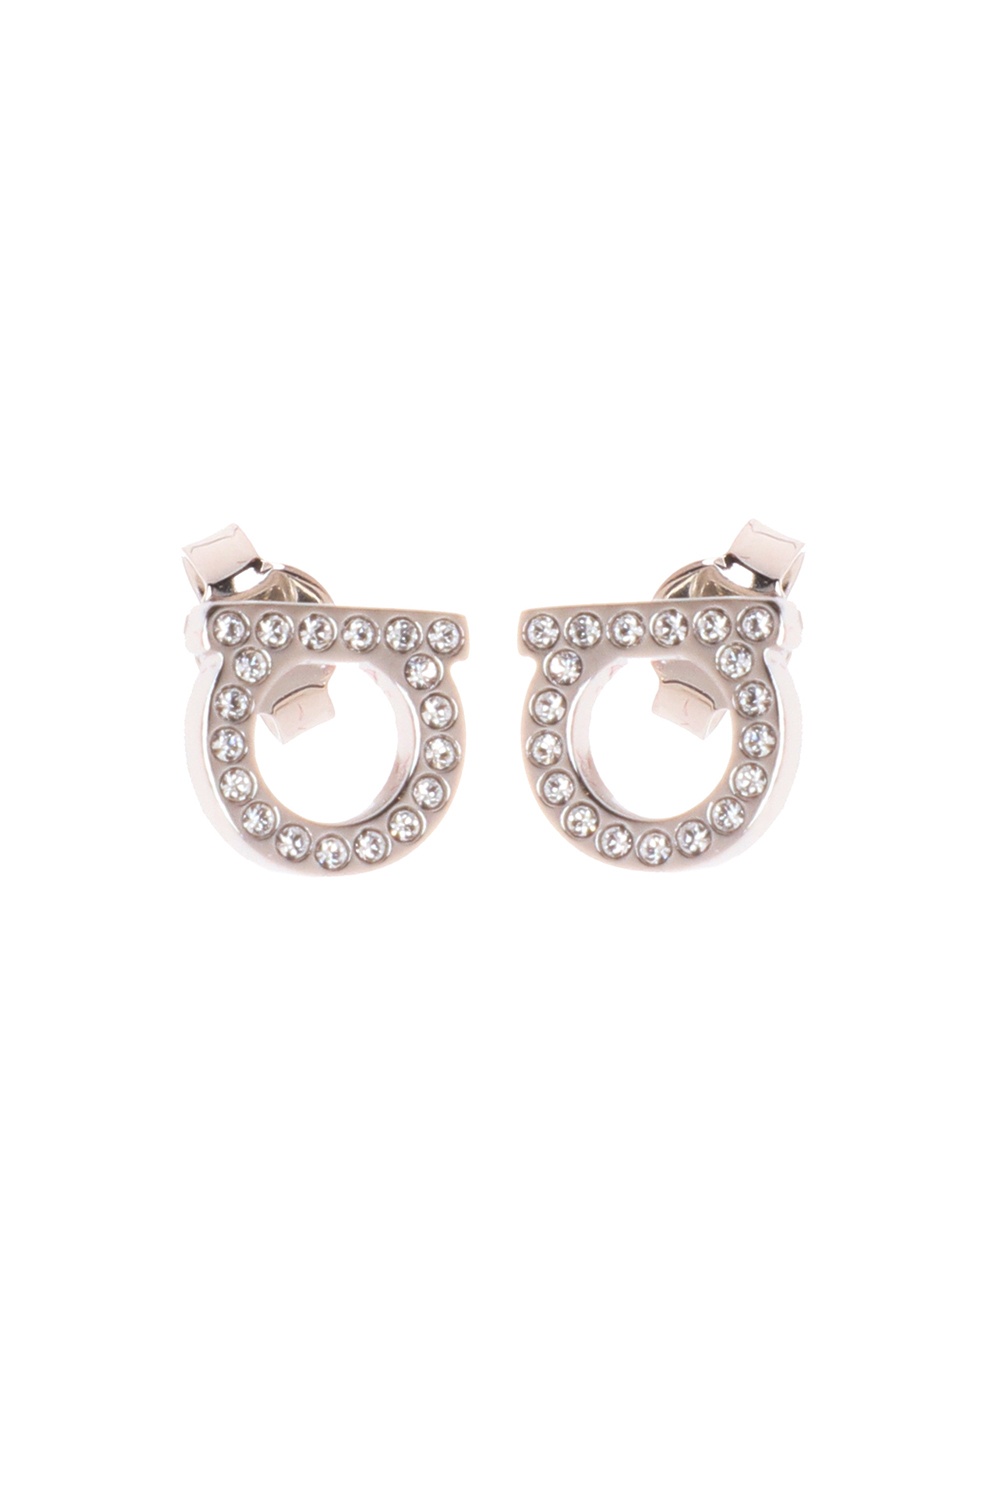 Salvatore Ferragamo 'Gancini' motif earrings | Women's Jewelery 